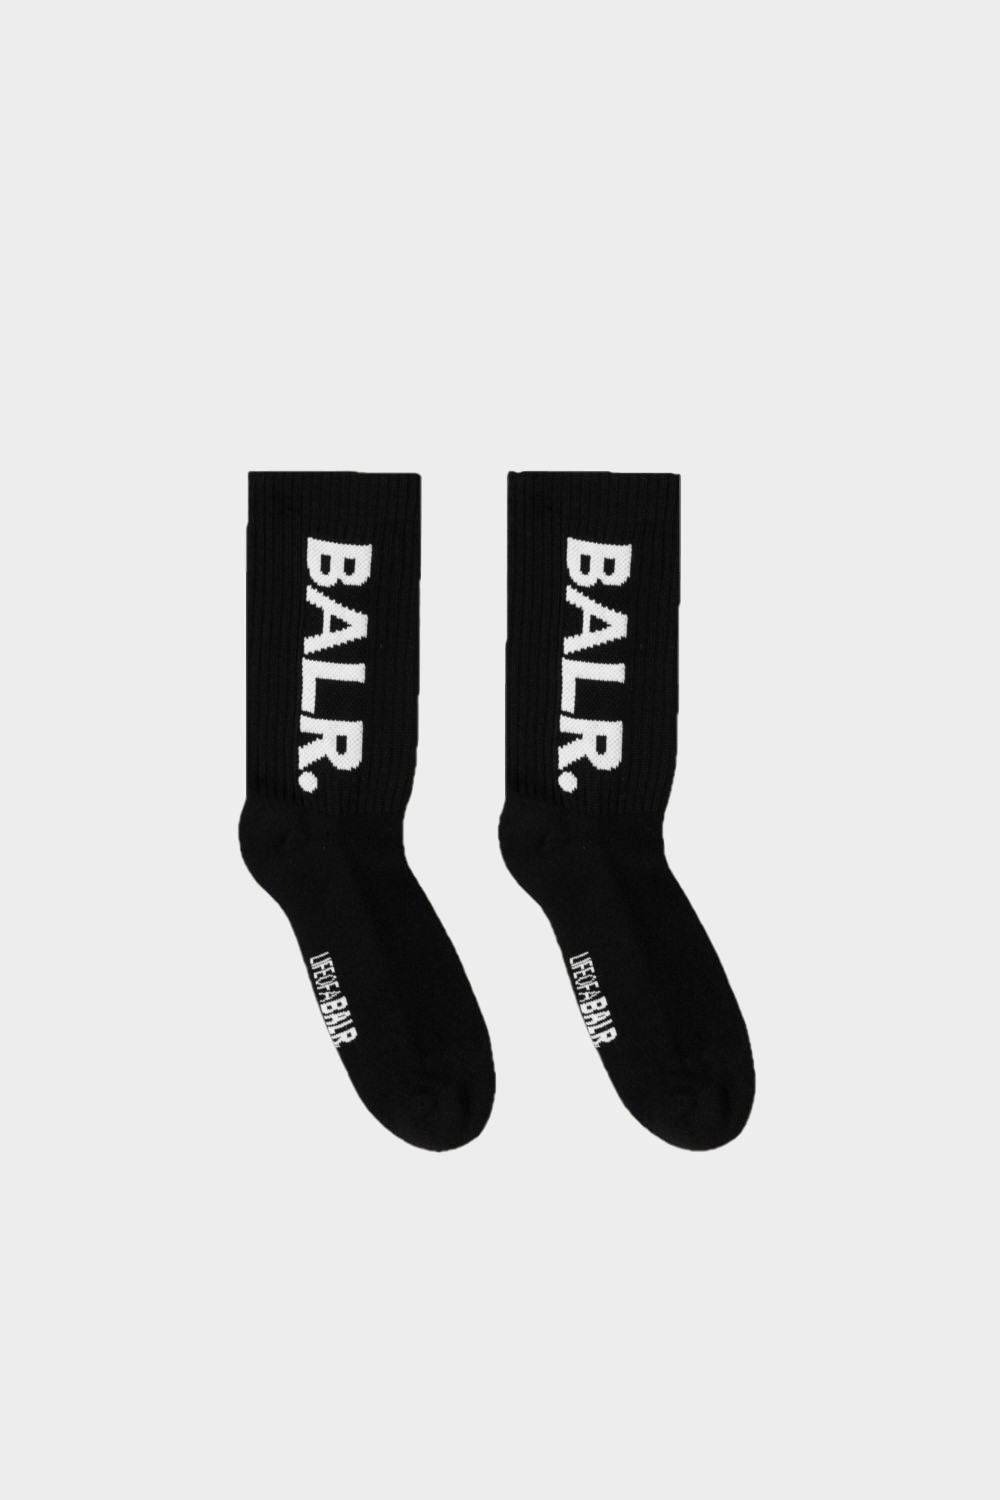 גרביים לגברים בצבע שחור BALR